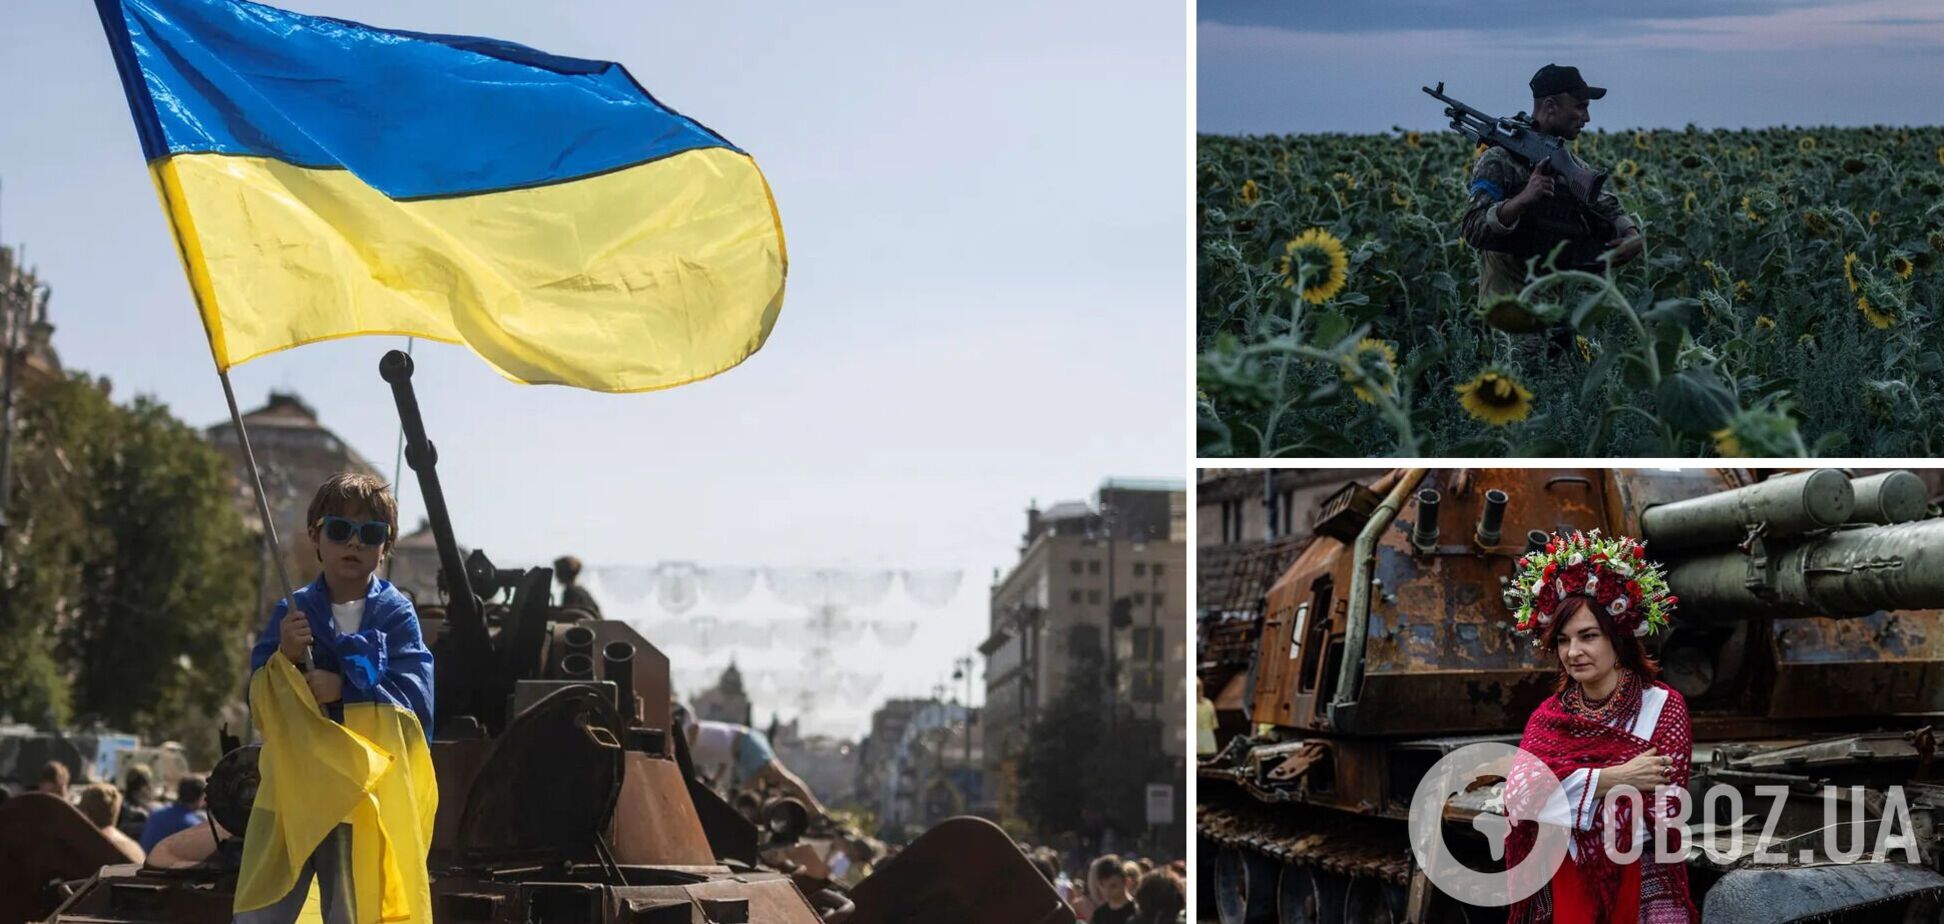 С верой в победу: Украина отметила День Независимости под звуки воздушных тревог и взрывов. Фото и видео